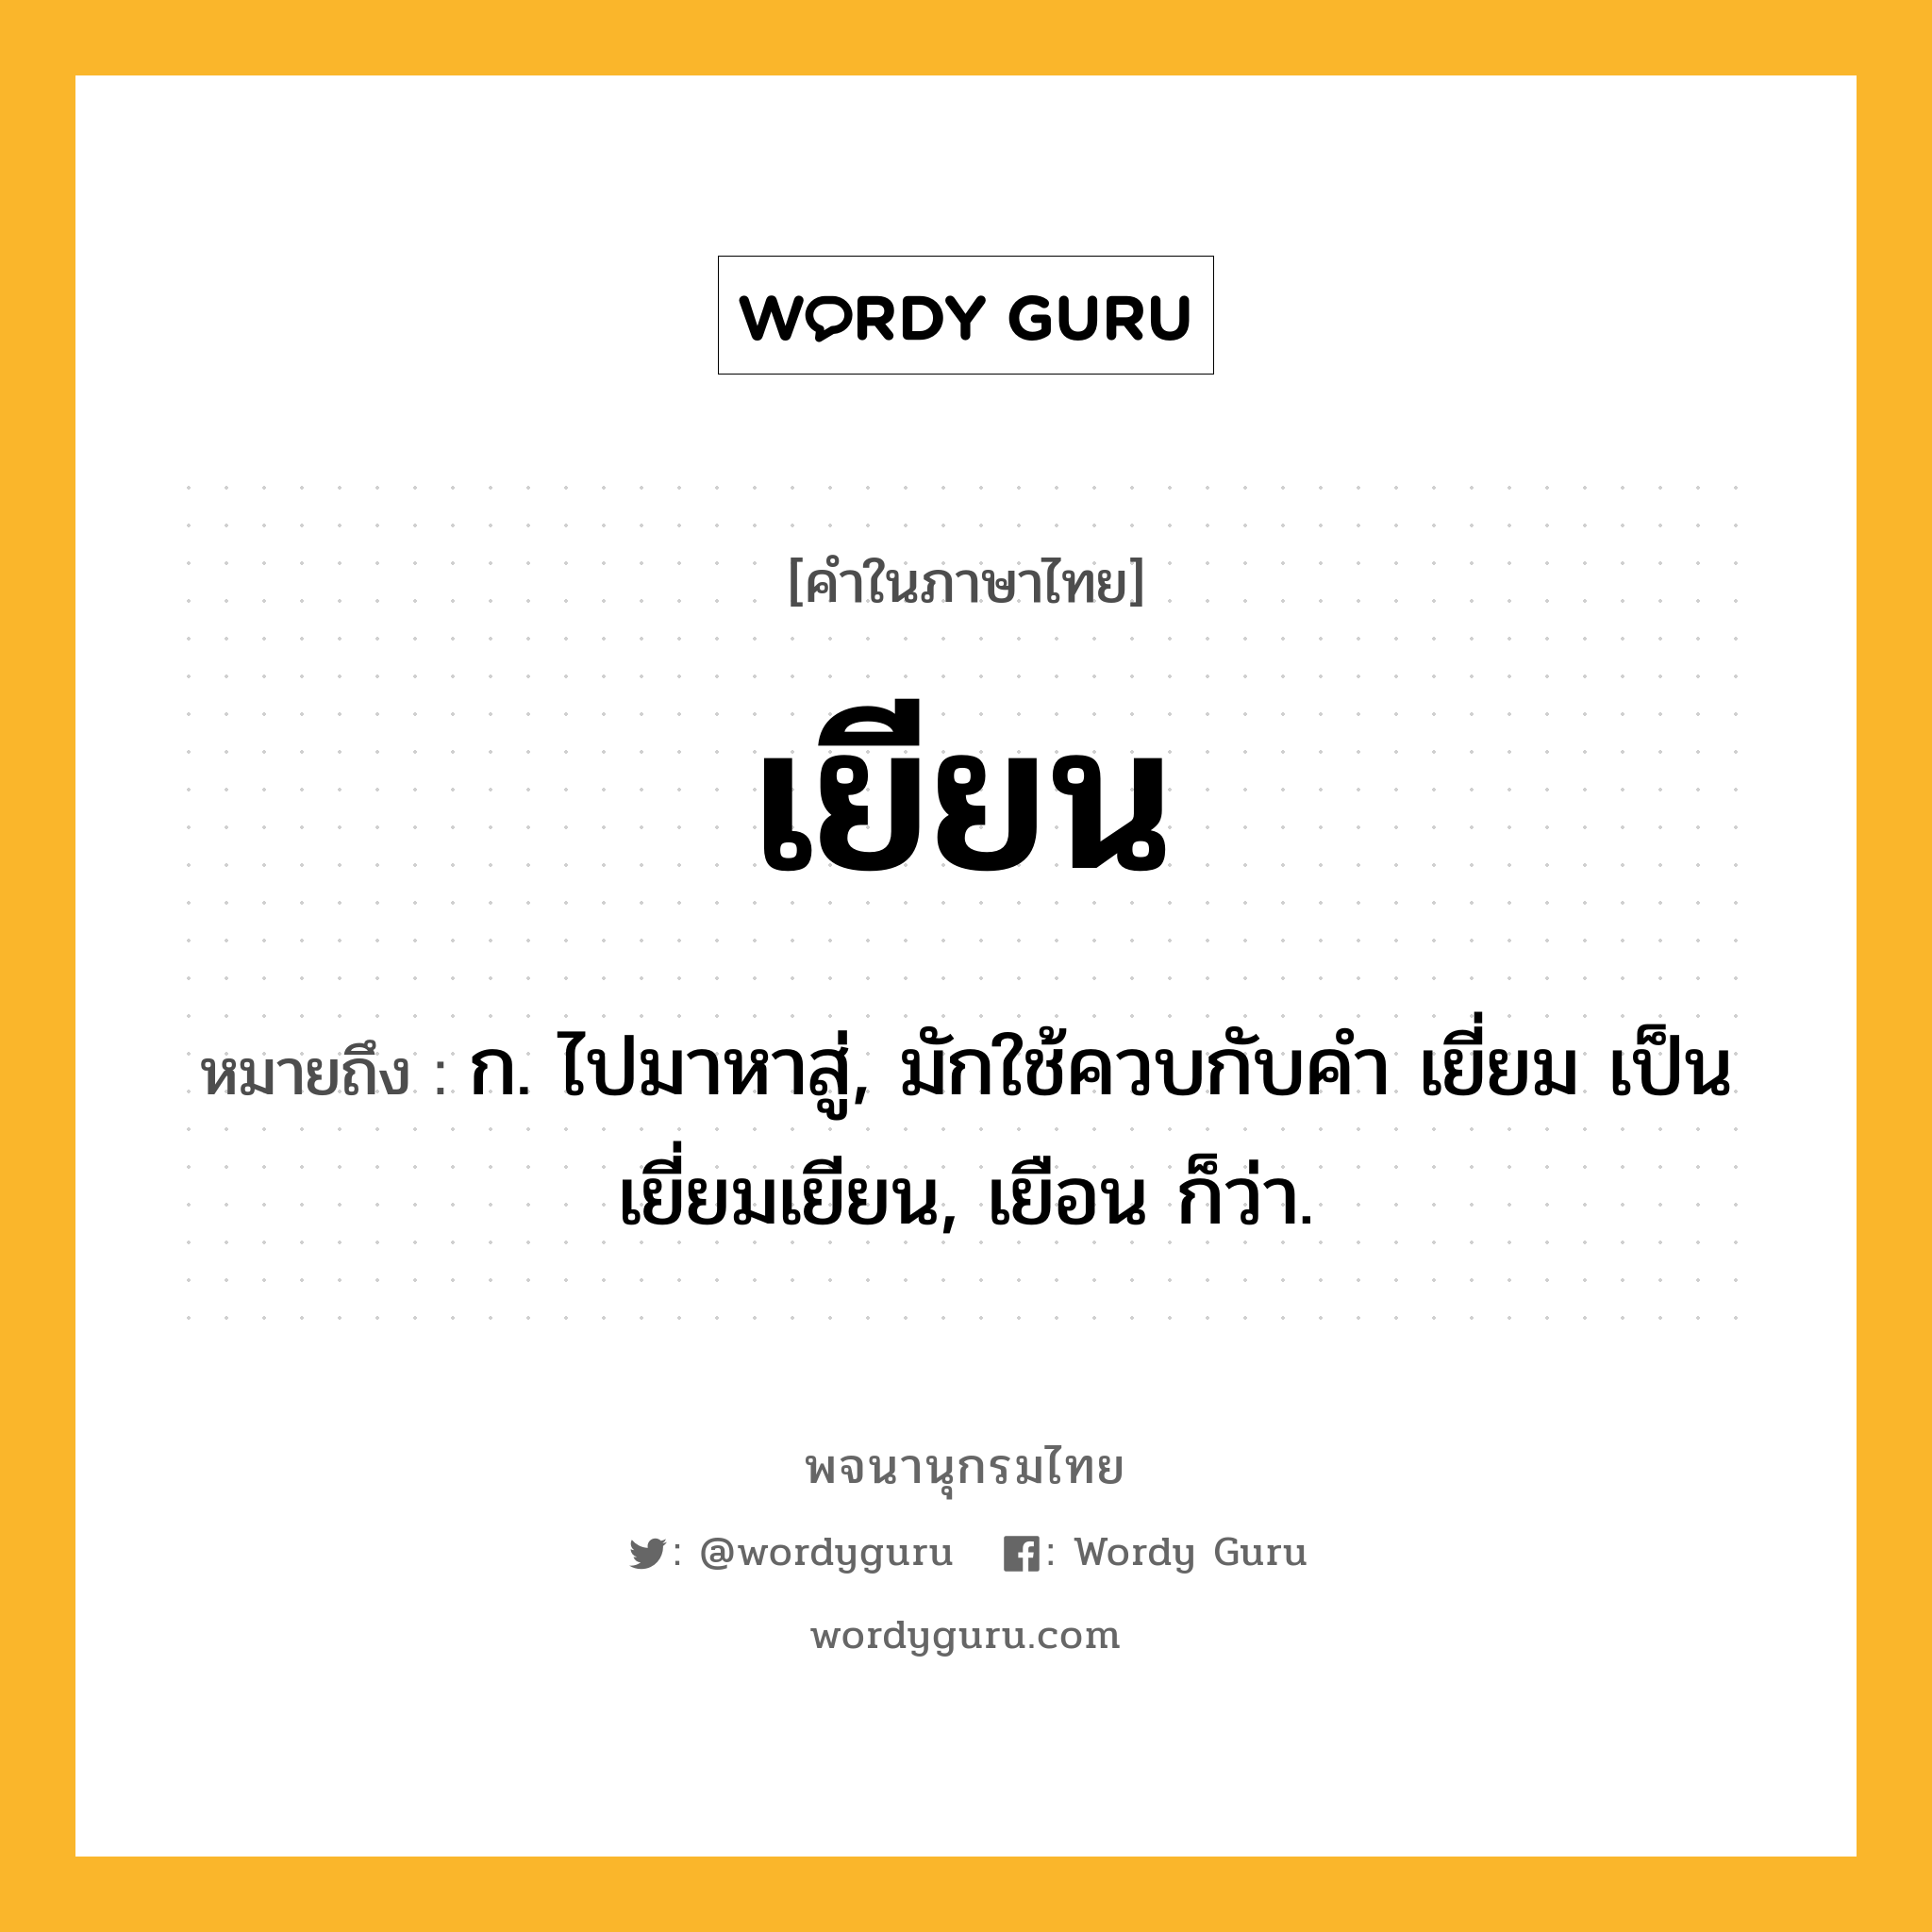 เยียน ความหมาย หมายถึงอะไร?, คำในภาษาไทย เยียน หมายถึง ก. ไปมาหาสู่, มักใช้ควบกับคํา เยี่ยม เป็น เยี่ยมเยียน, เยือน ก็ว่า.